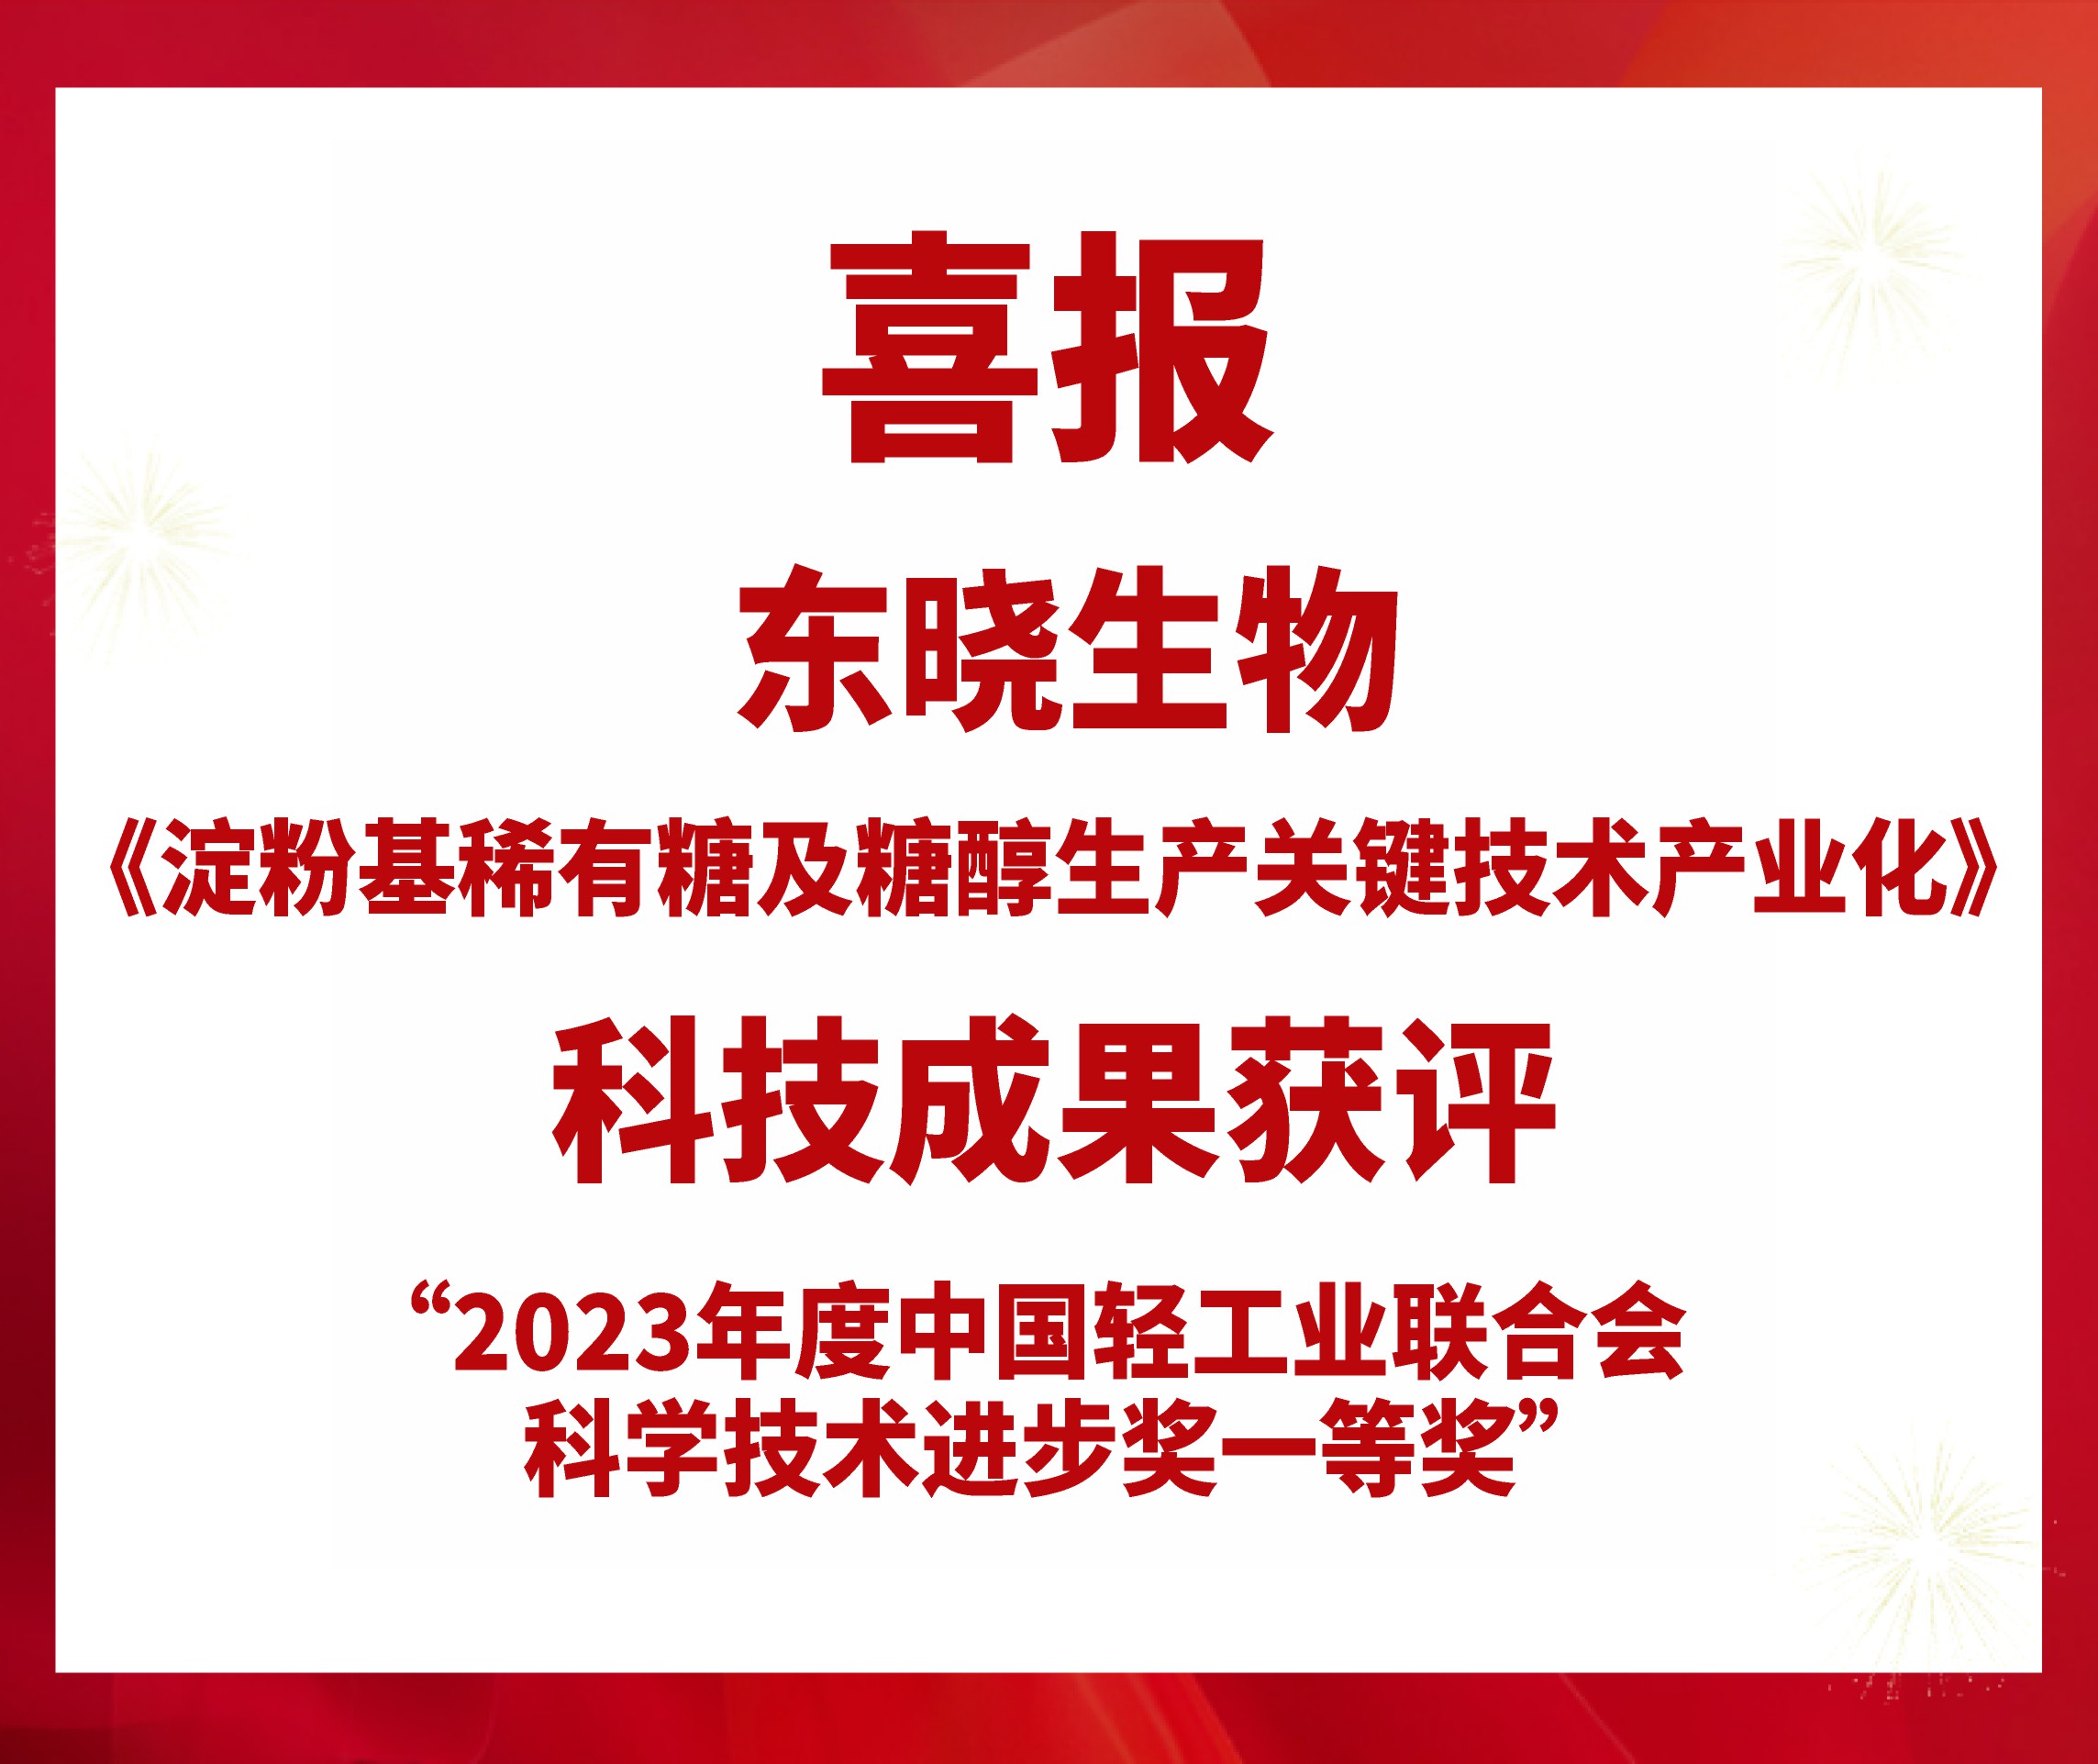 喜报 | 东晓生物获评2023年度中国轻工业联合会科学技术进步一等奖